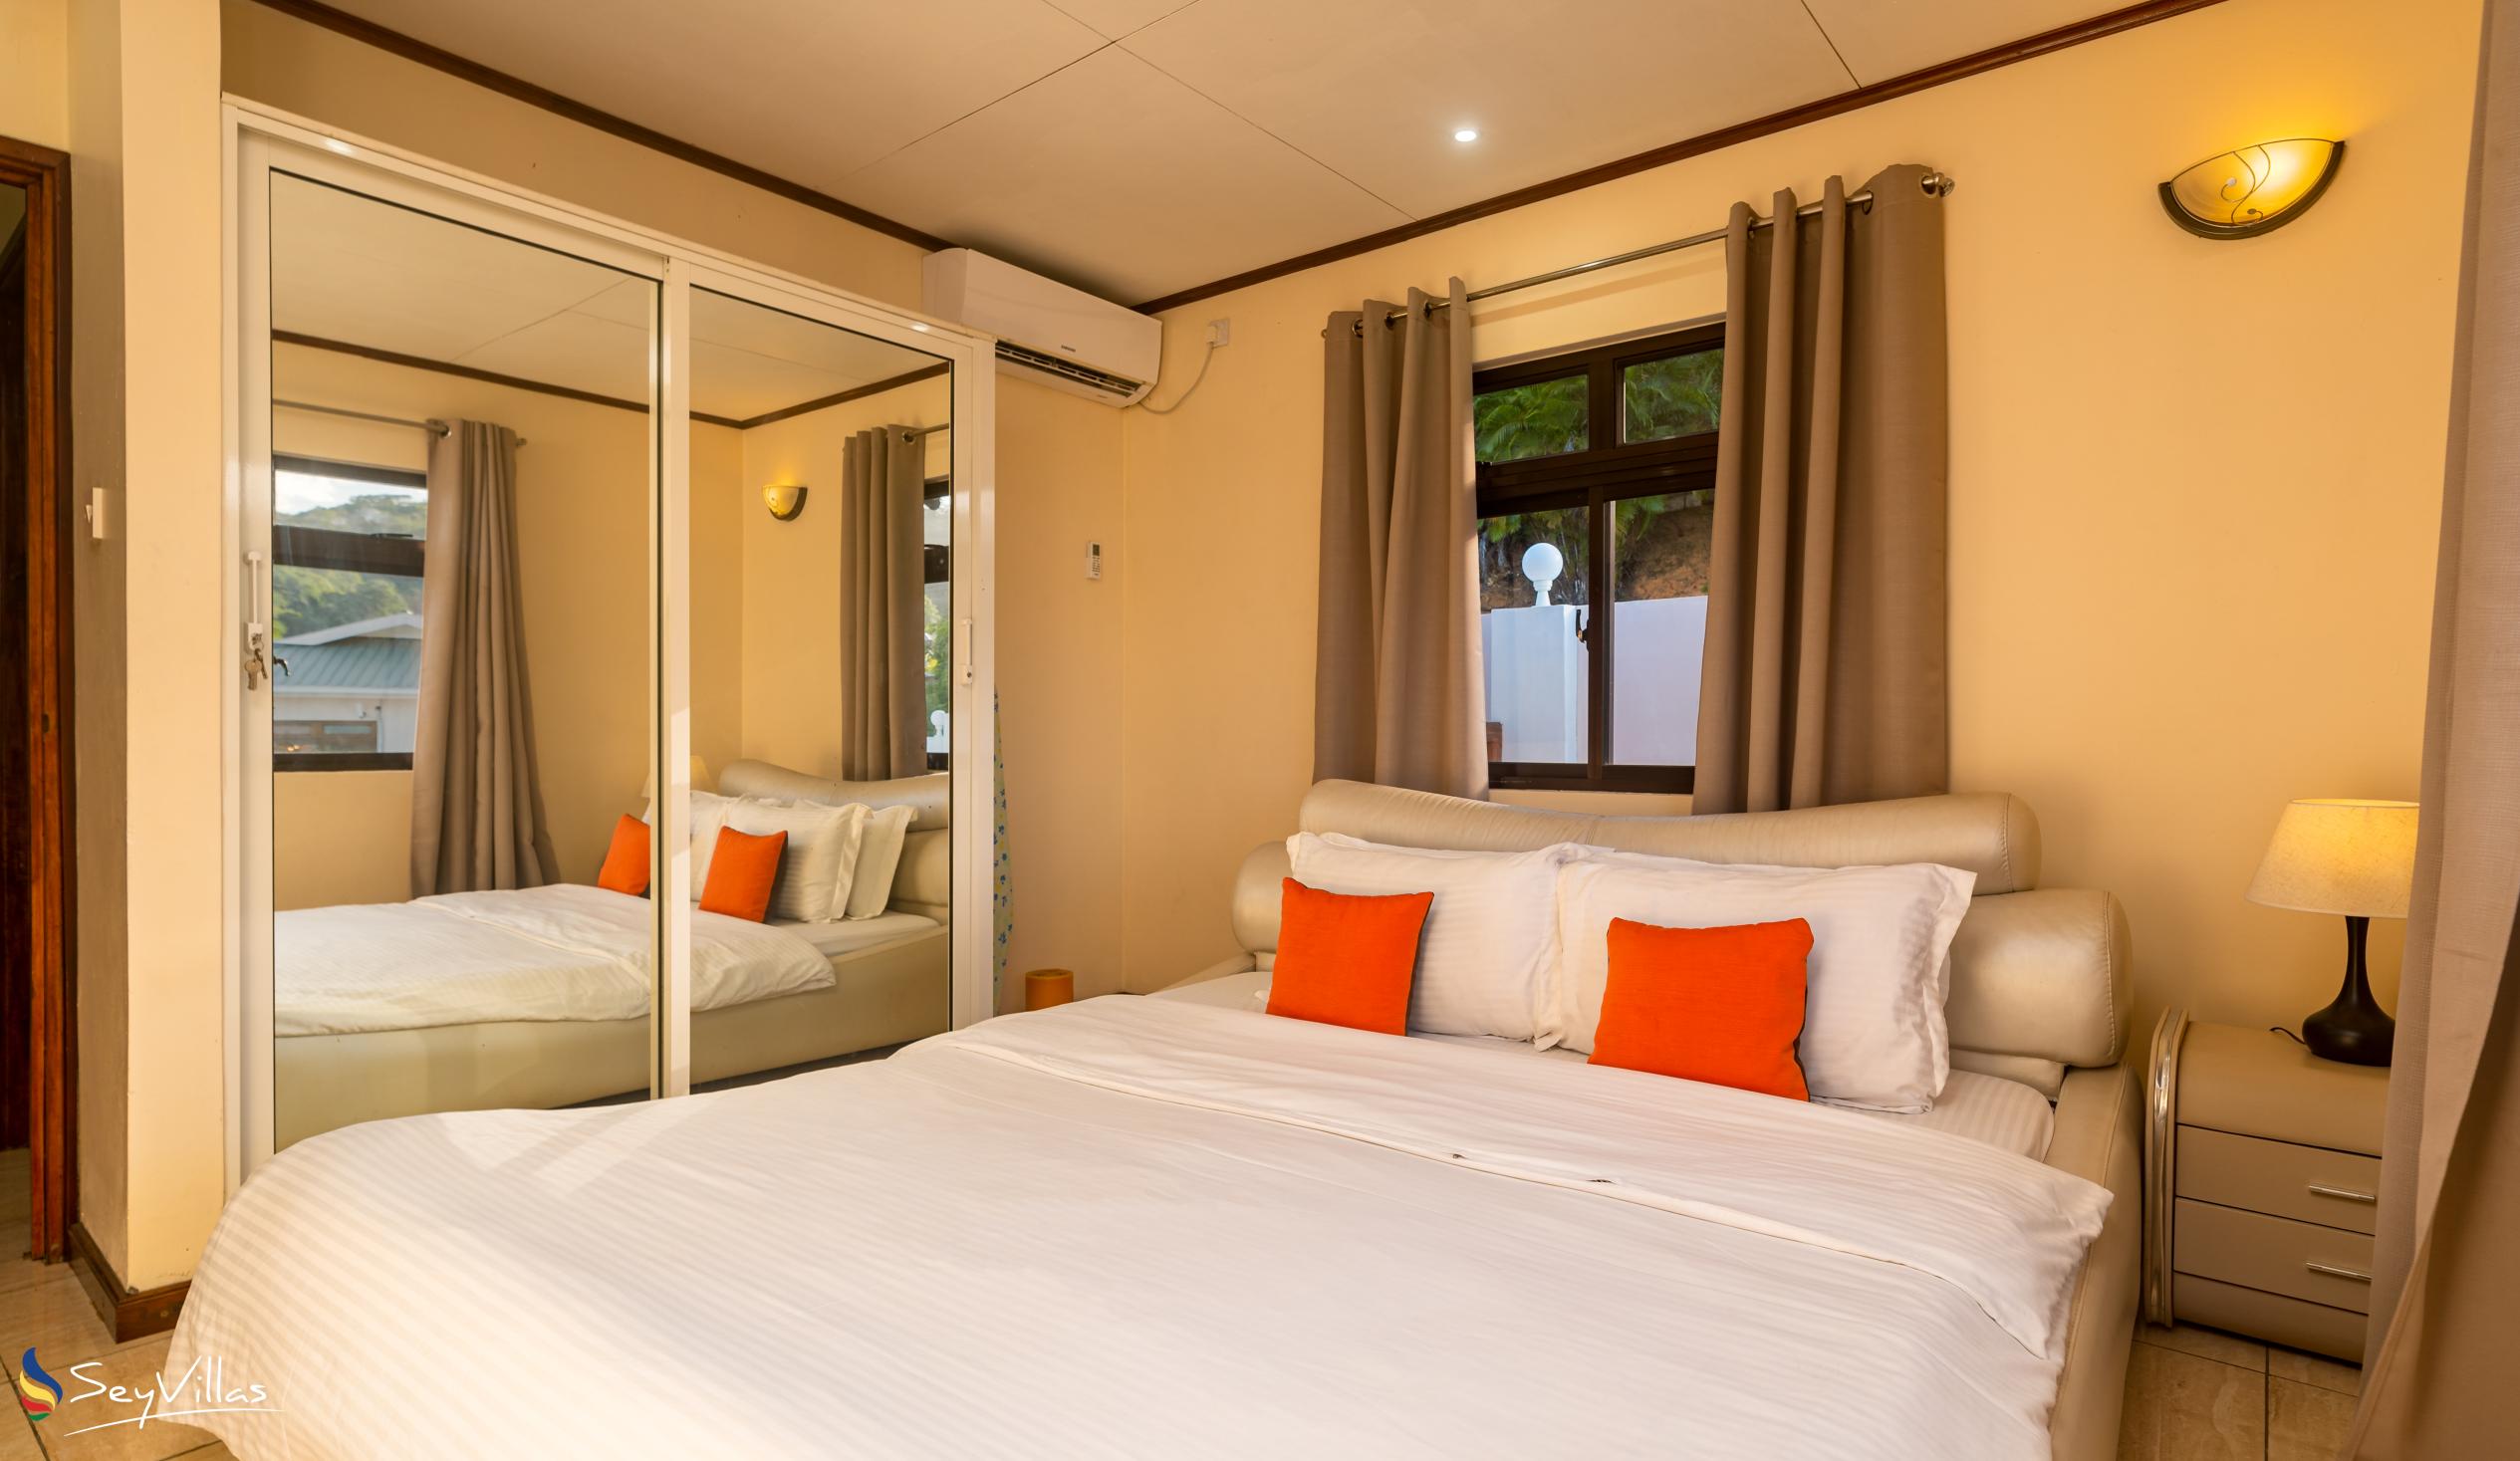 Foto 48: Maison L'Horizon - Appartamento con 2 camere Soley - Mahé (Seychelles)